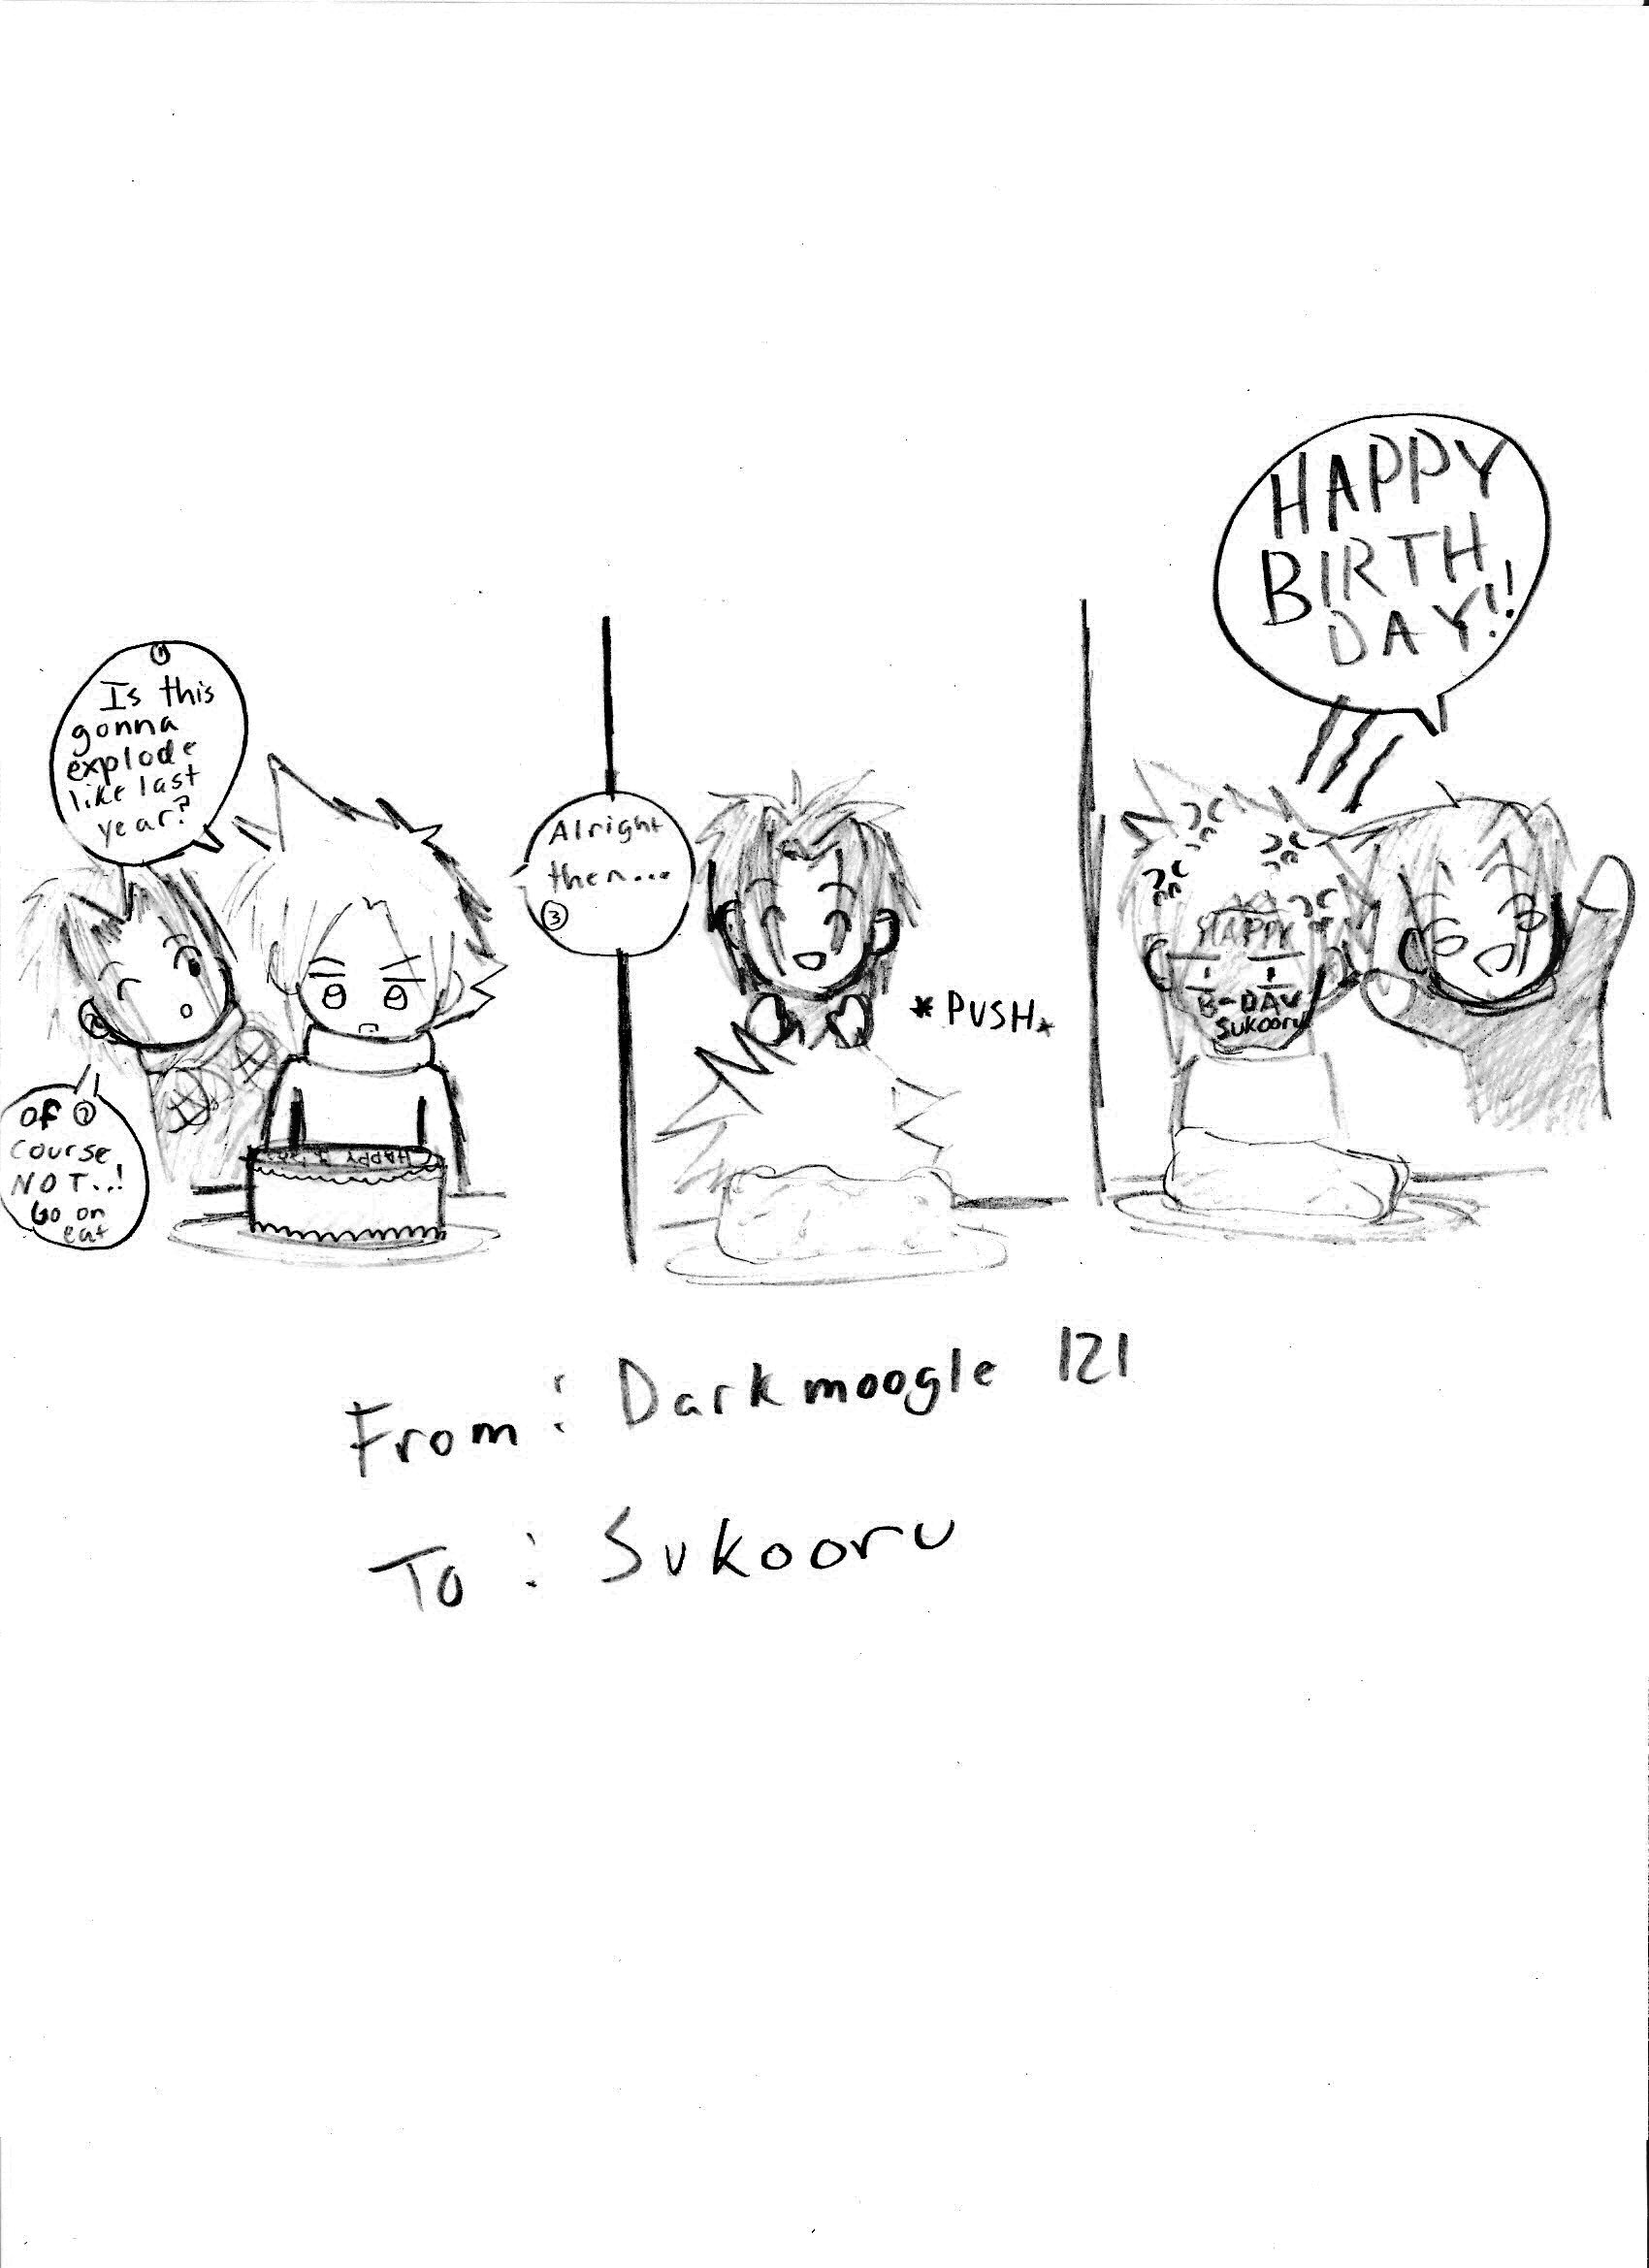 Happy Birthday Sukooru by darkmoogle121